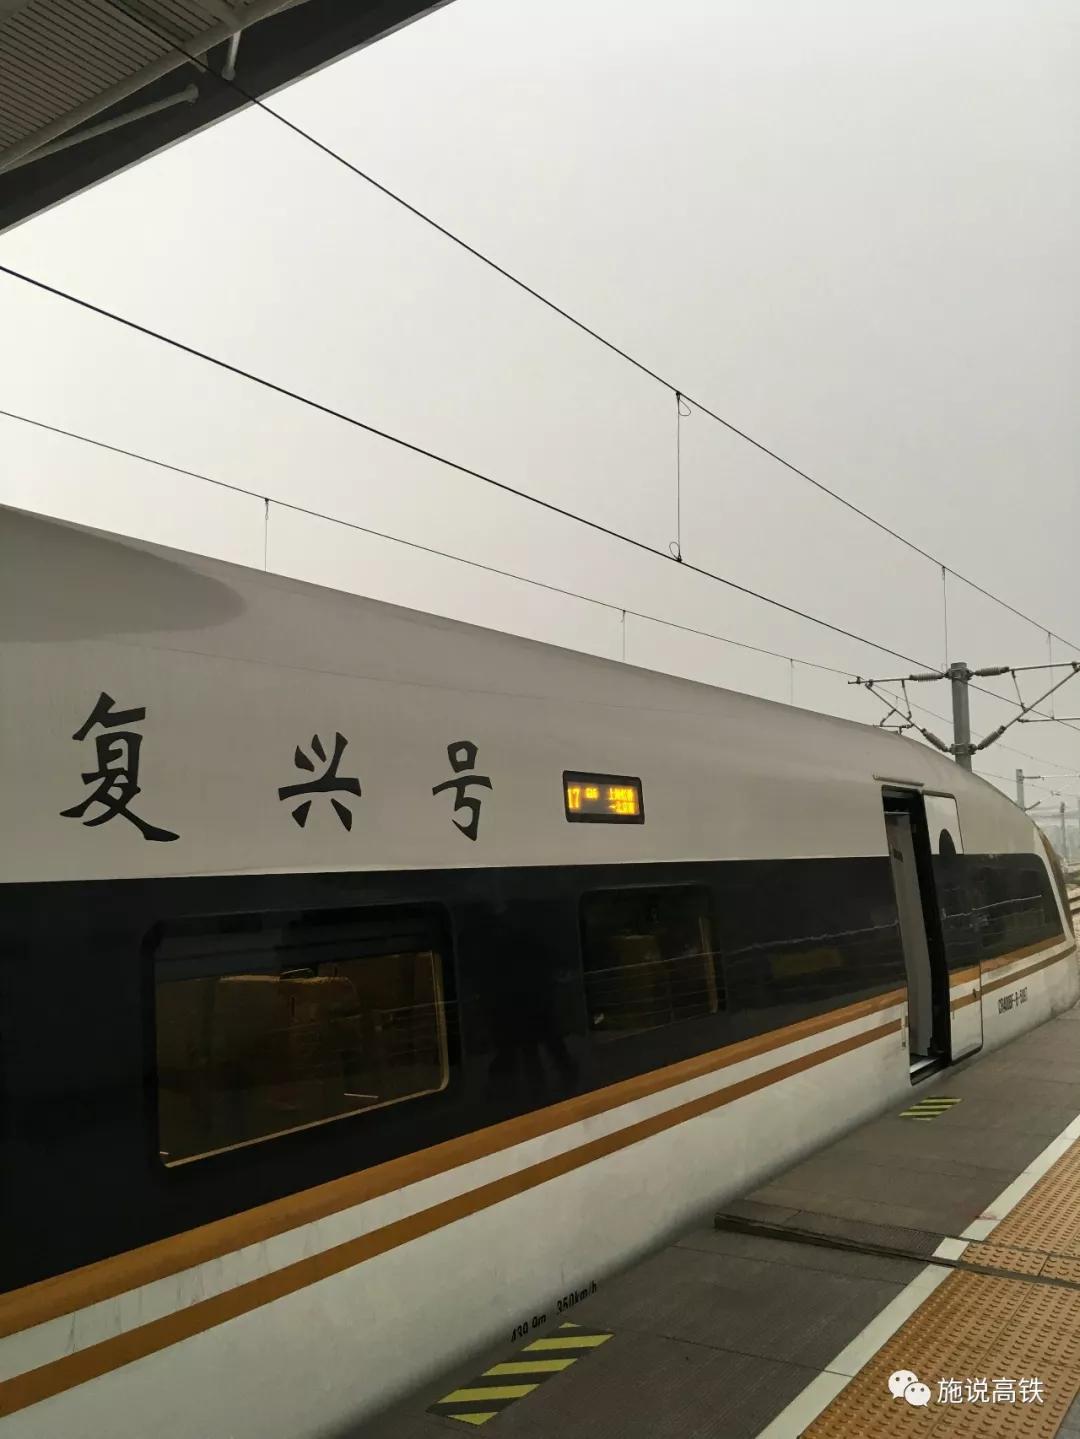 青岛北至北京南间将新增一对怒跨济南东的标杆g字头列车